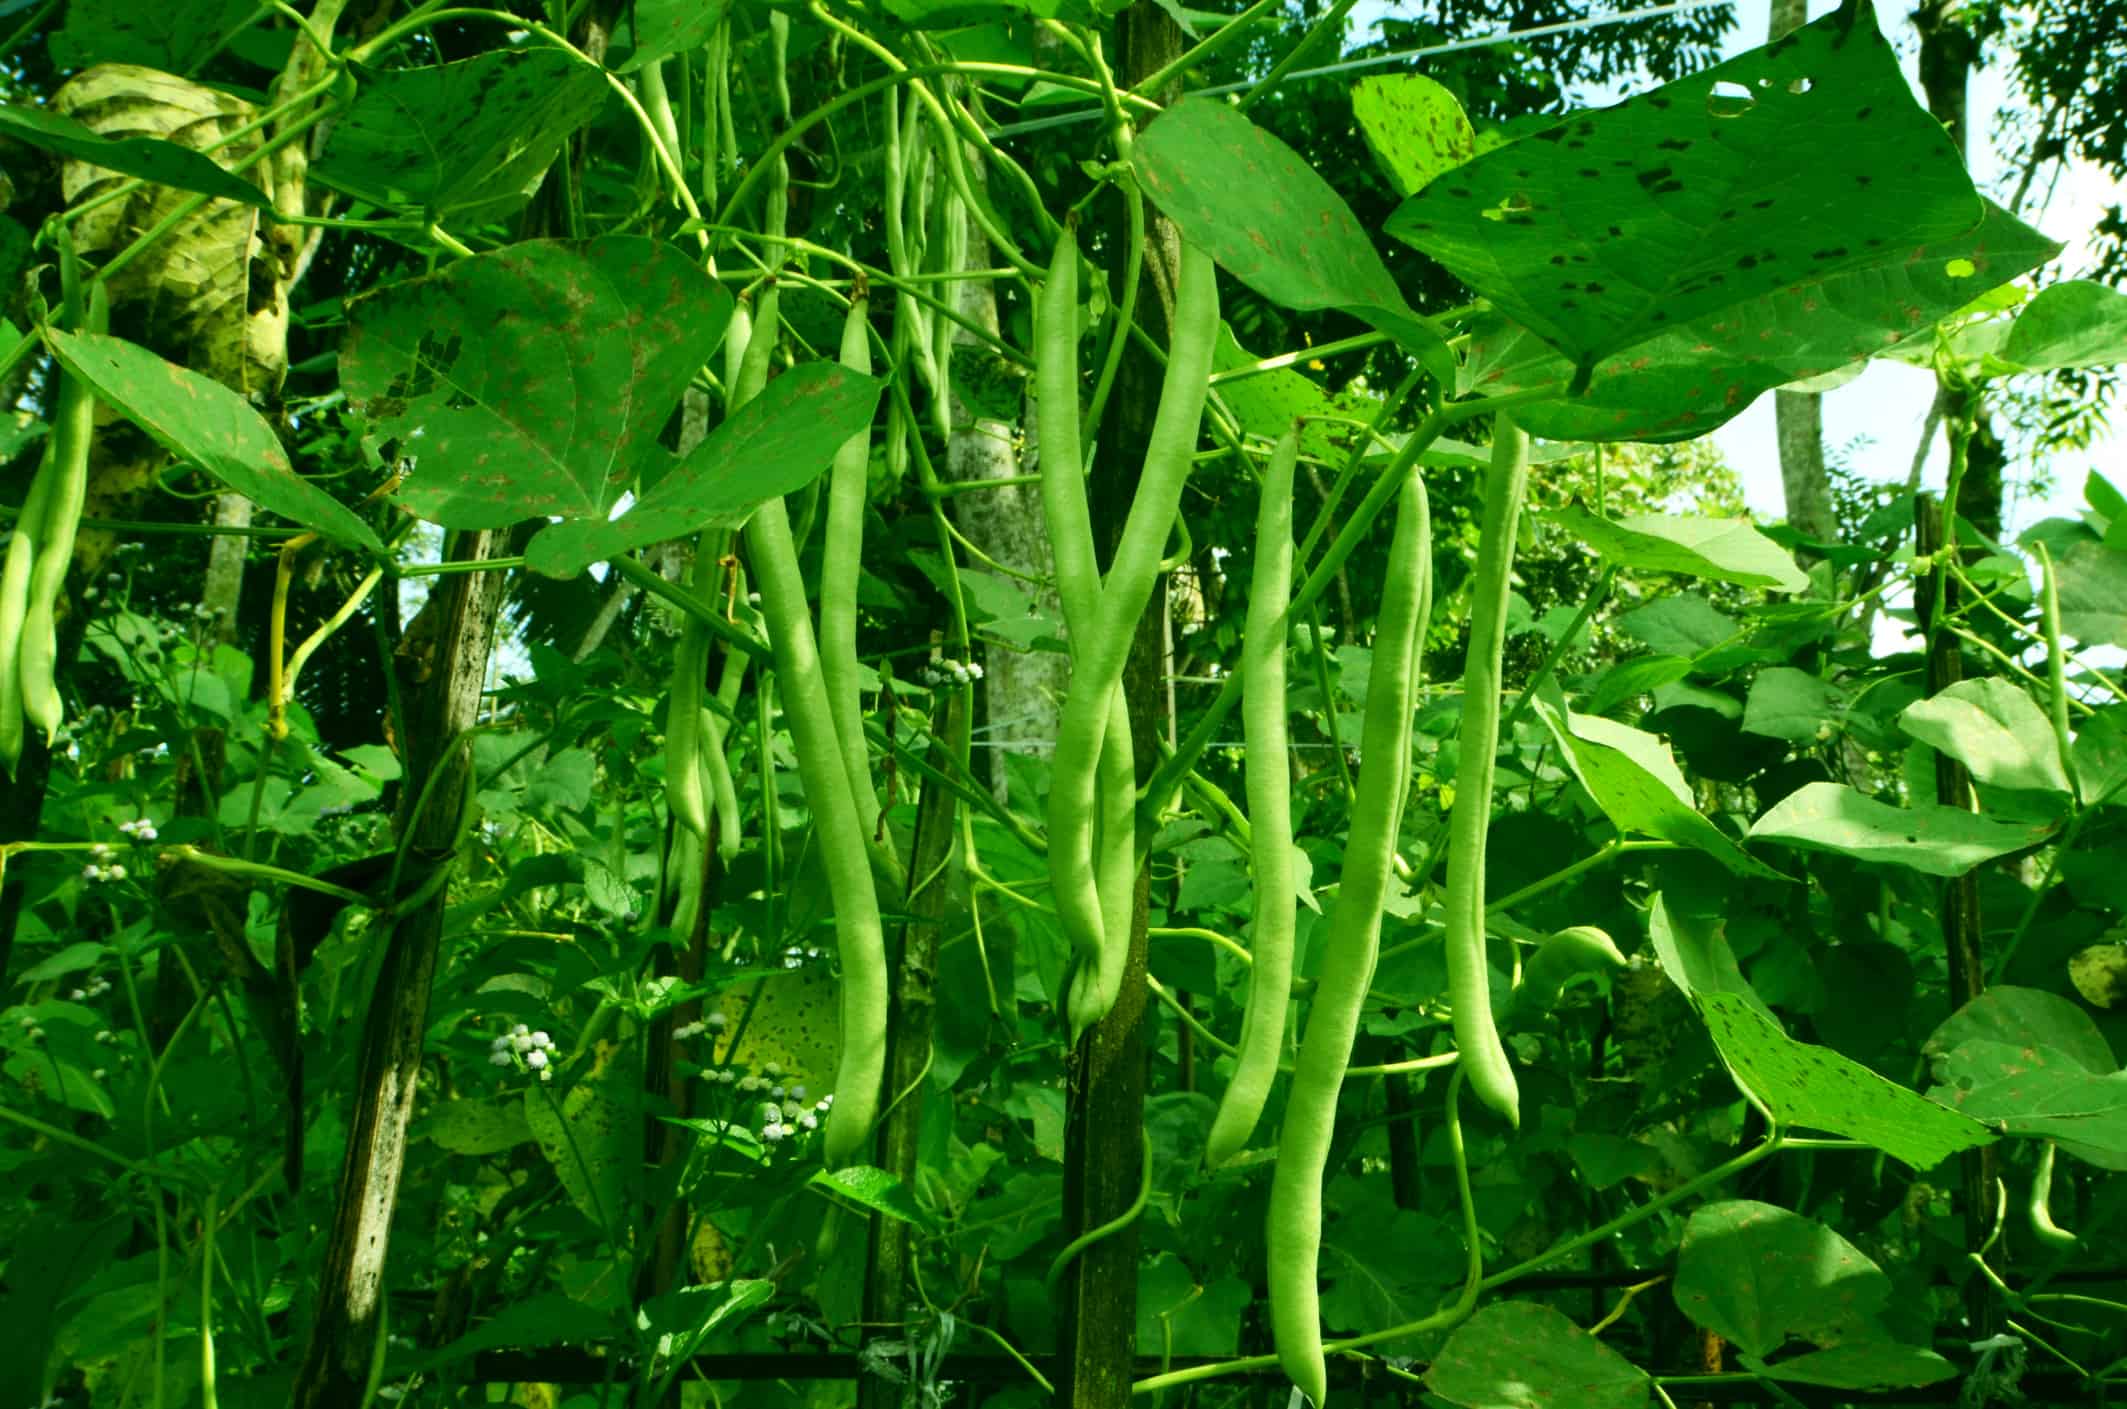 Field Green Bean Plants